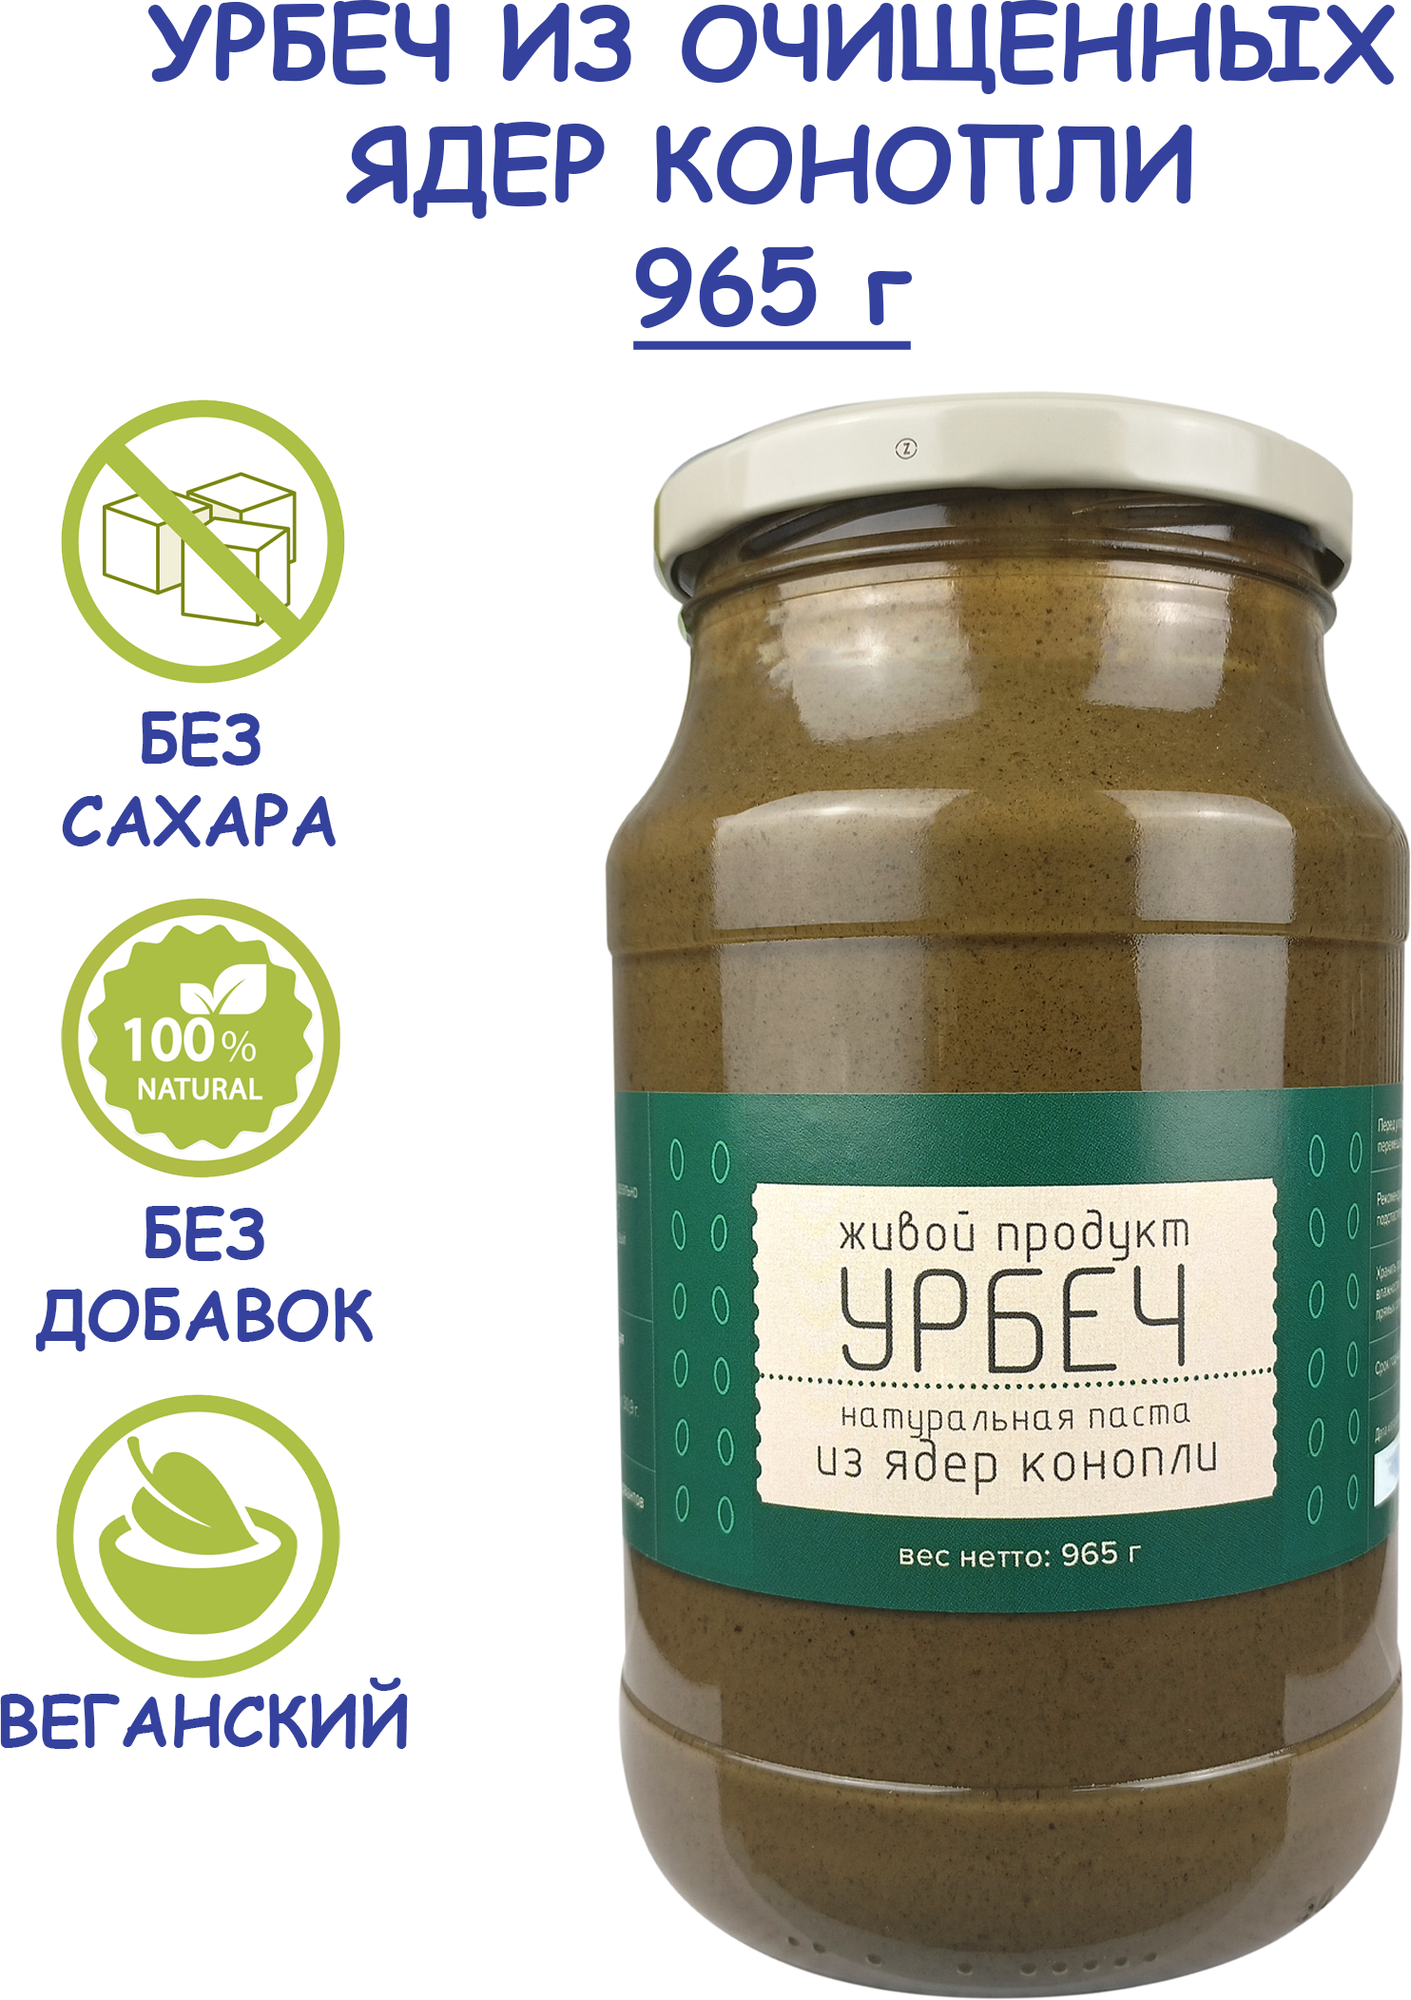 Живой продукт Урбеч из ядер хемп, 965 г